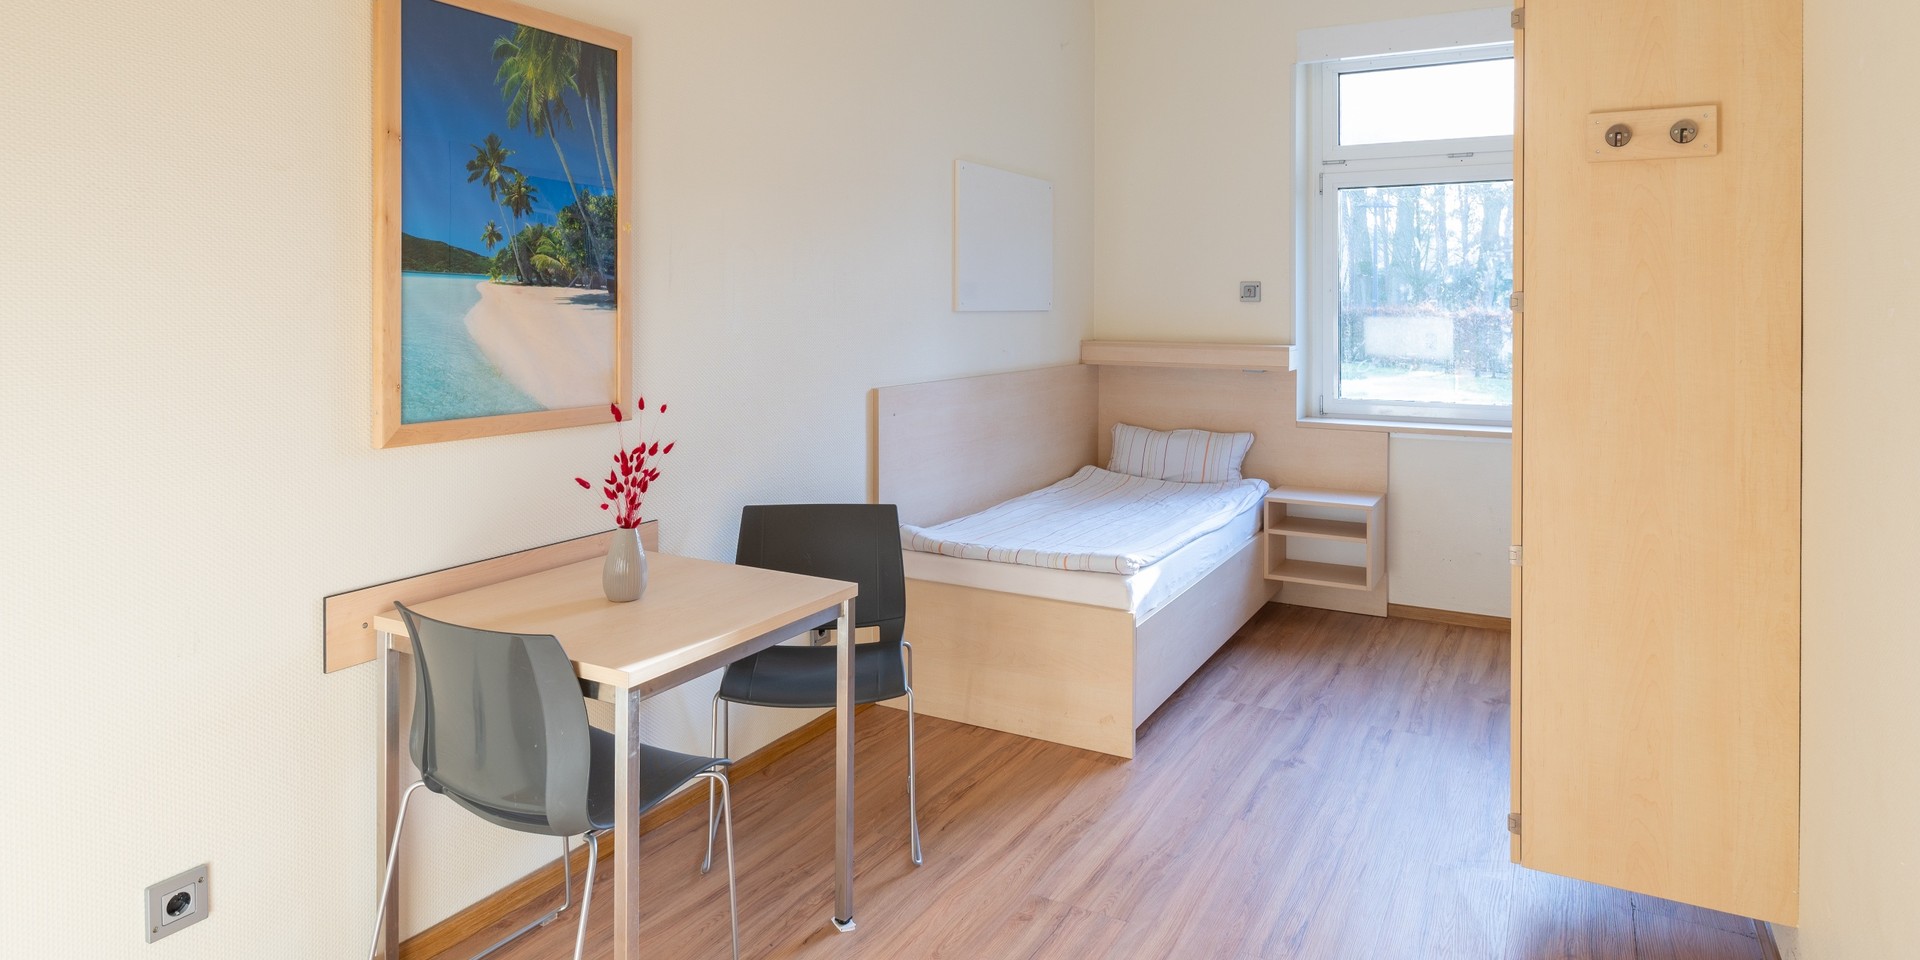 In einem hellen Patiententimmer stehen ein Bett mit weißer Bettwäsche, eine Tischgruppe und ein Schrank. An der Wand hängt ein Bild mit Palmen.